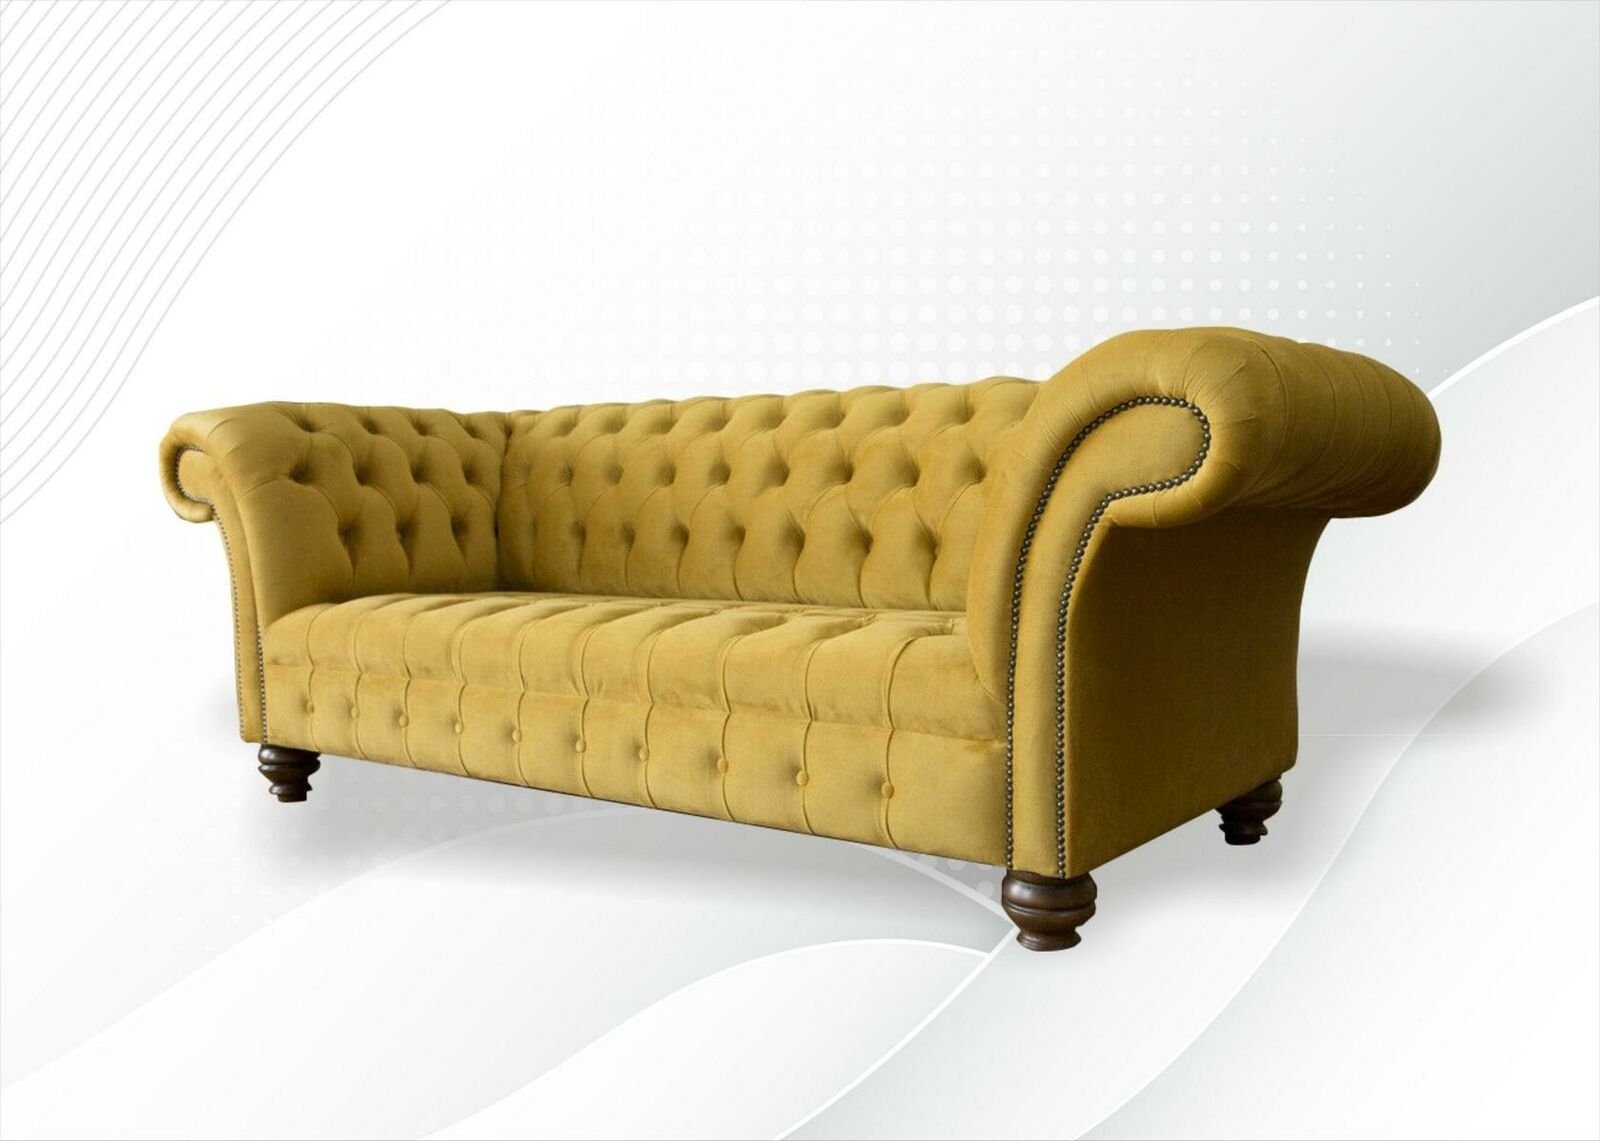 Gelber Design Couch in JVmoebel luxus Europe Chesterfield-Sofa Made 3-er Neu, Chesterfield Dreisitzer